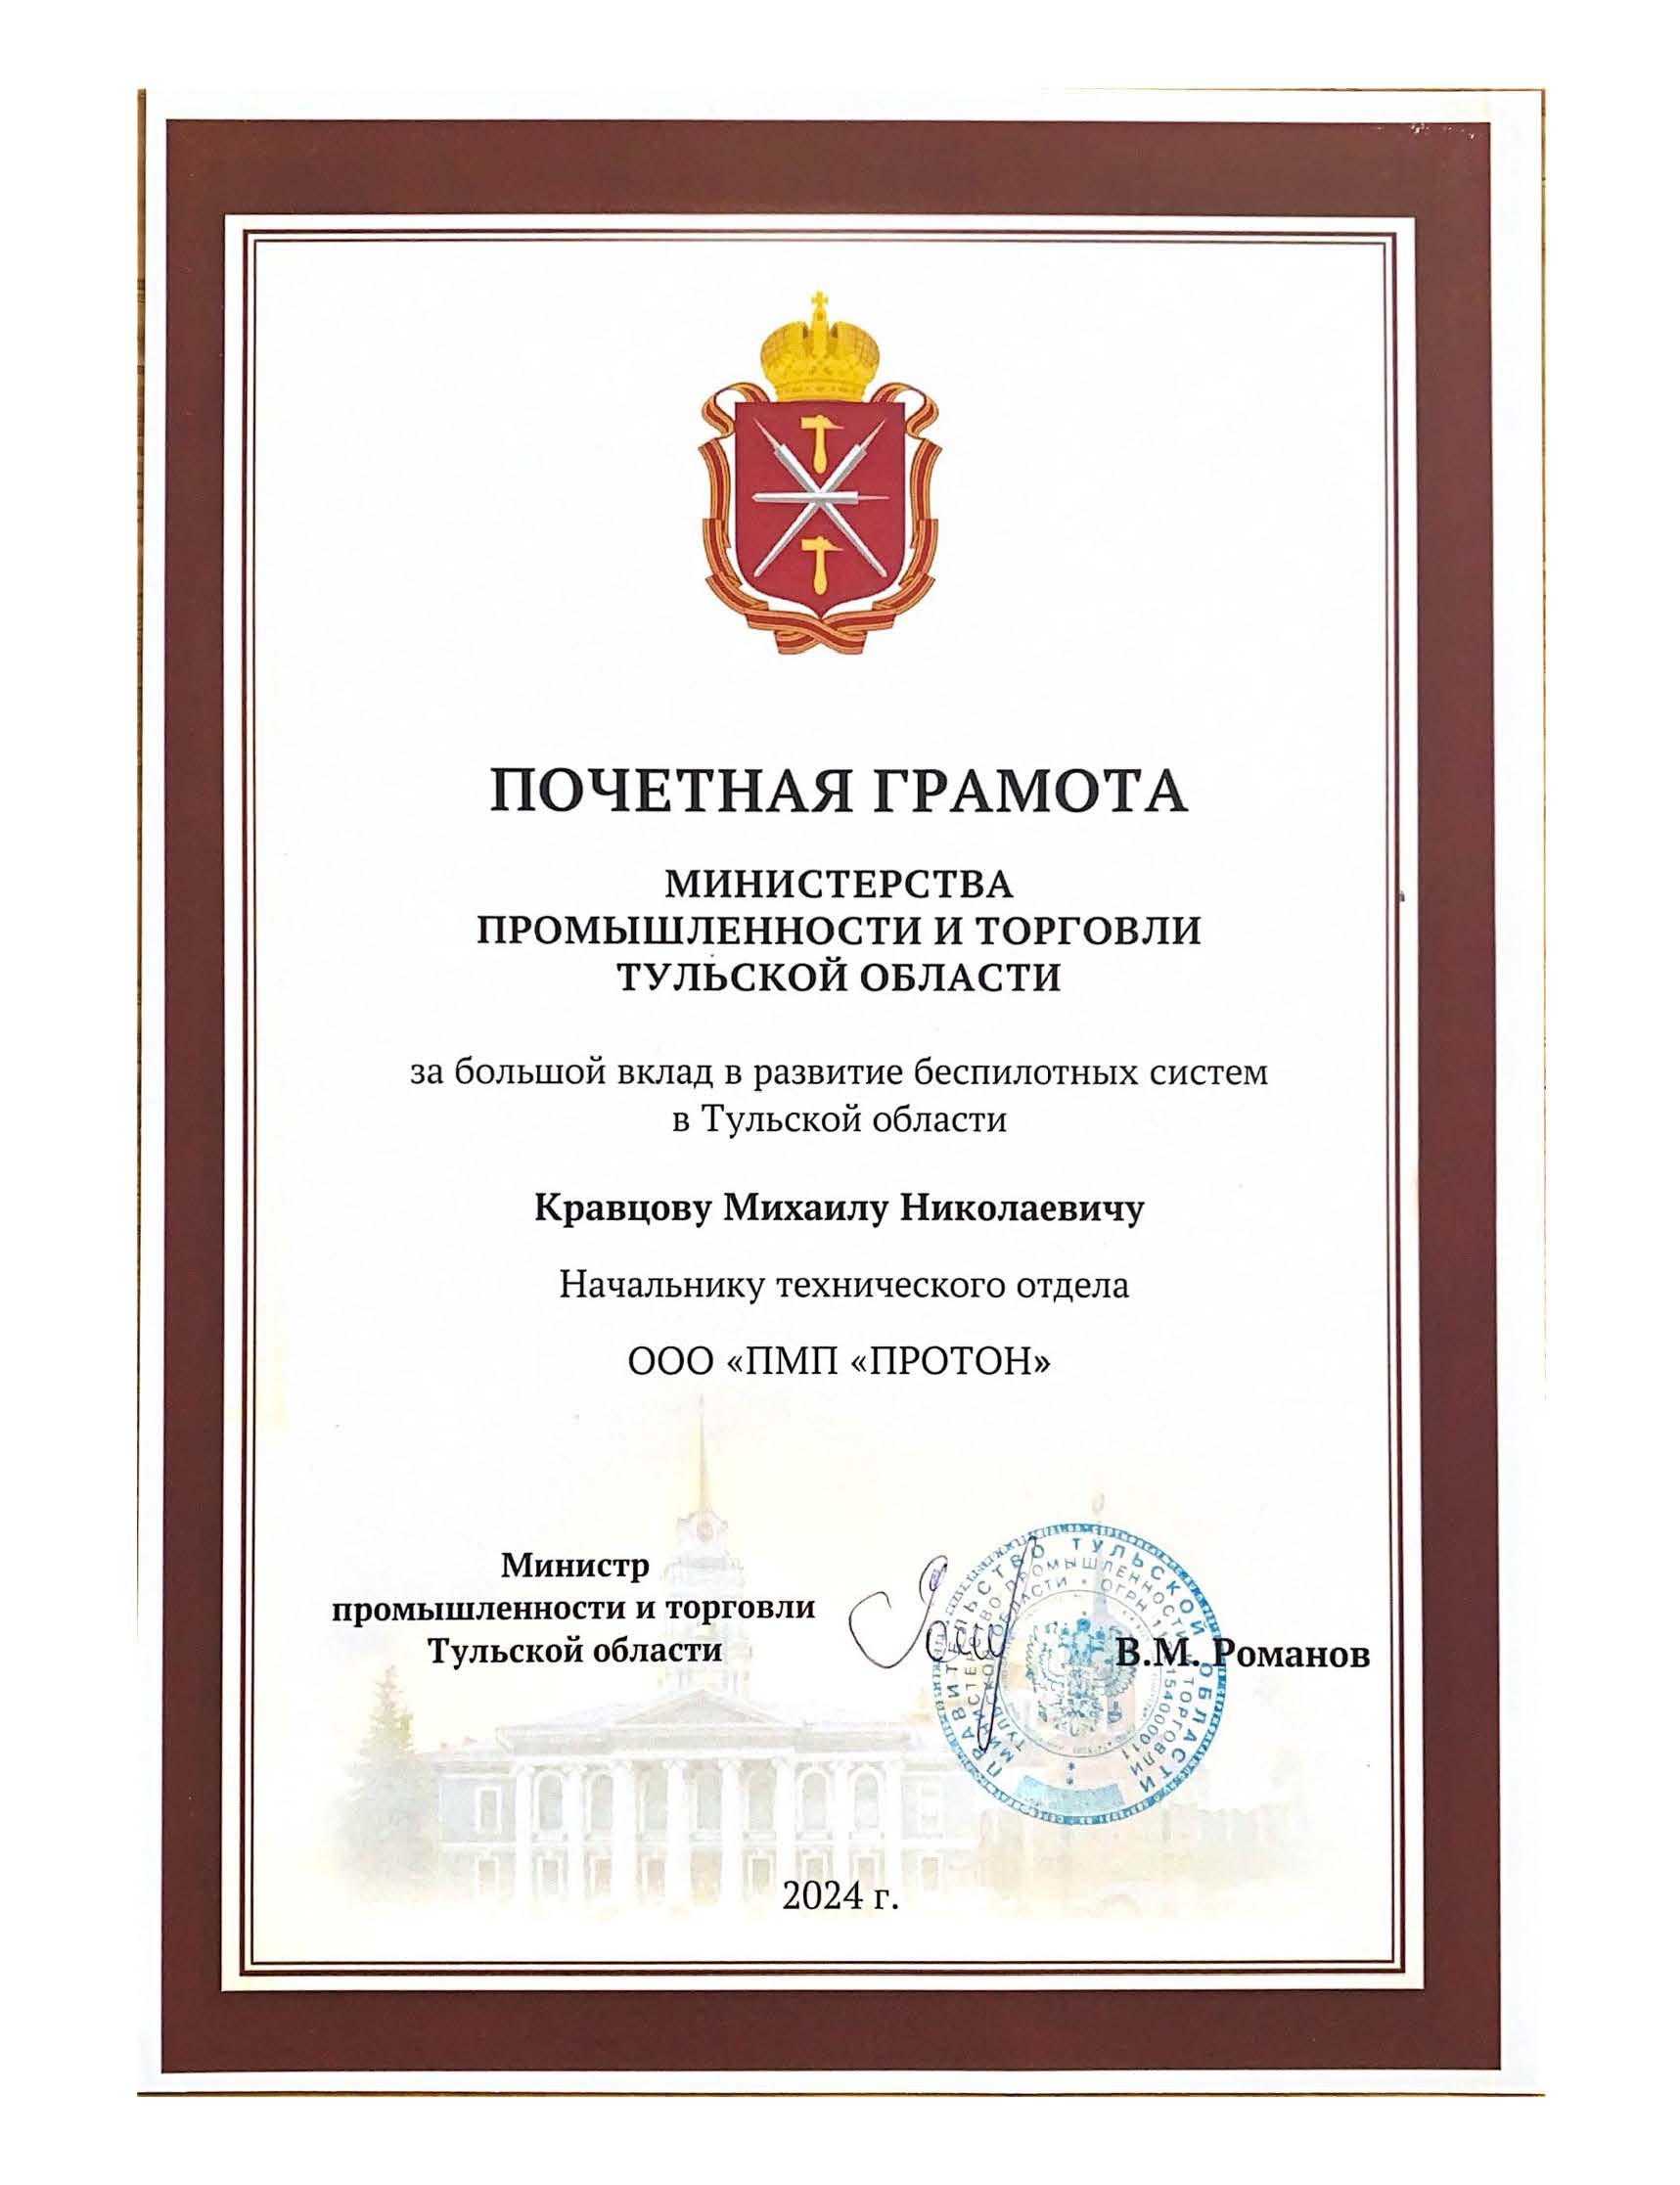 Награждение сотрудников ООО "ПМП "ПРОТОН" Министерством промышленности и торговли Тульской области